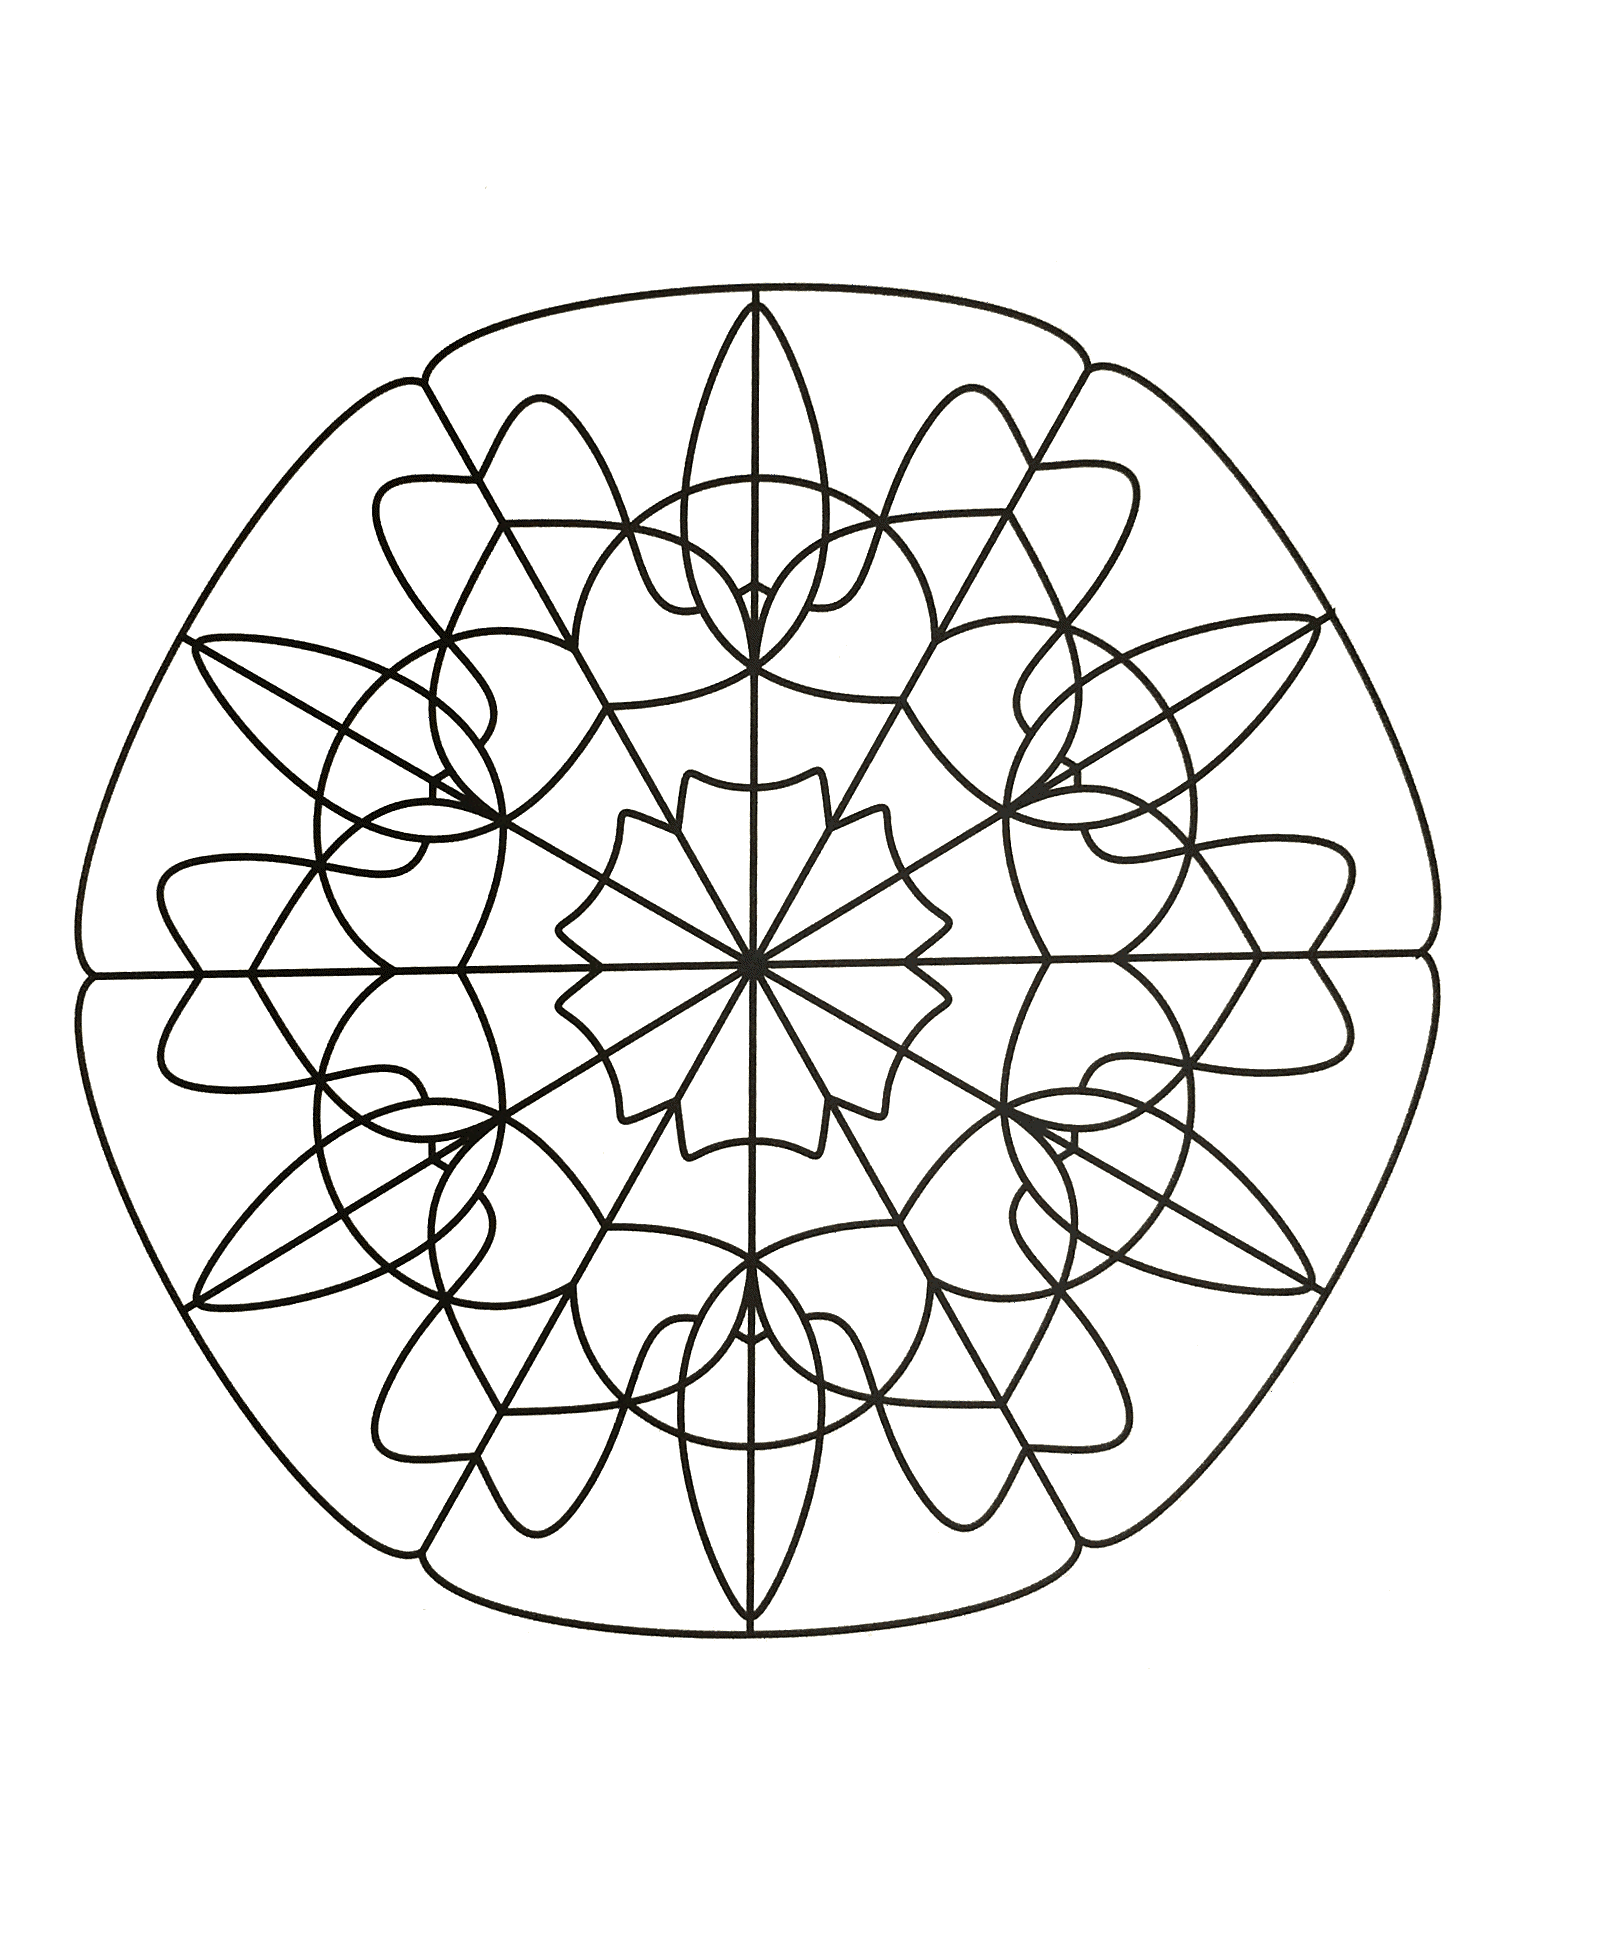 Rilassatevi con questo bellissimo Mandala dalle forme molto regolari e simmetriche, disegnato con grande talento.